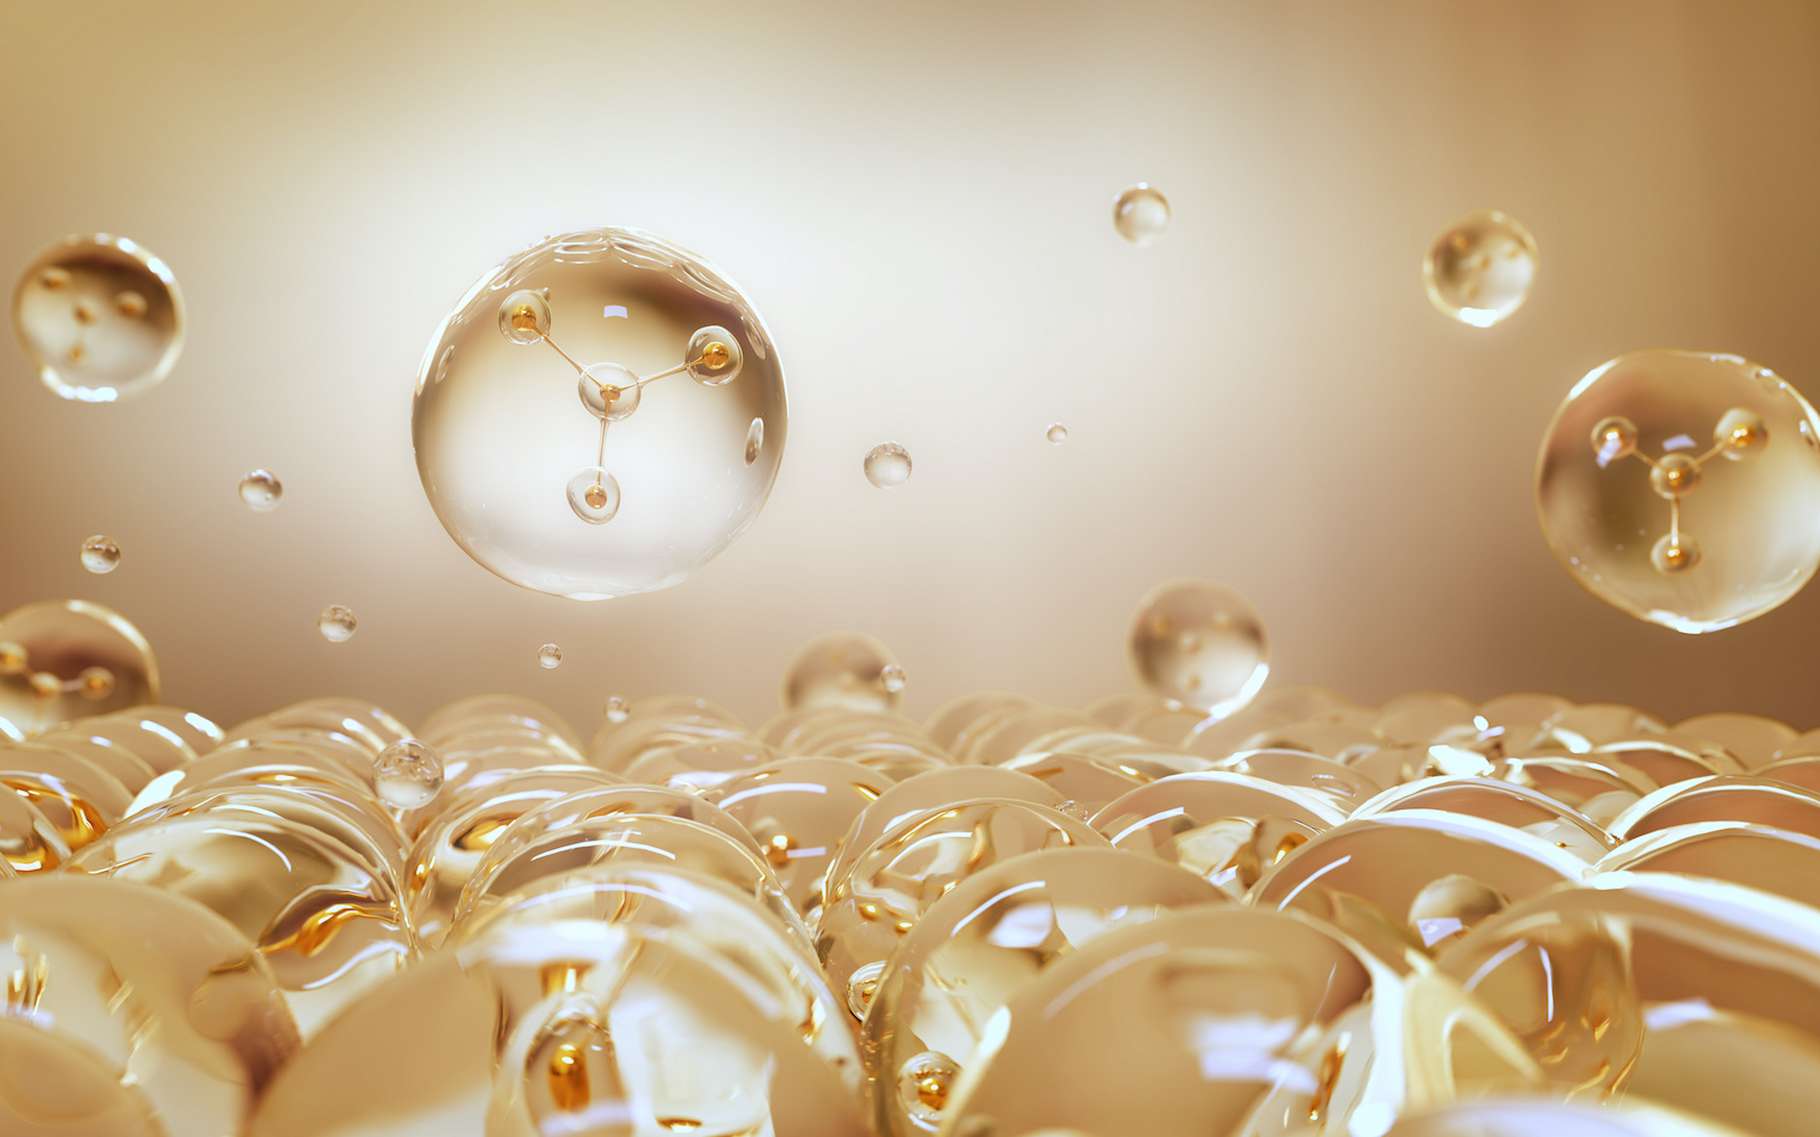 Des chercheurs de l’université de Manchester (Royaume-Uni) sont parvenus à observer les mouvements d’atomes uniques dans un liquide à la surface d’un solide. © onimate, Adobe Stock